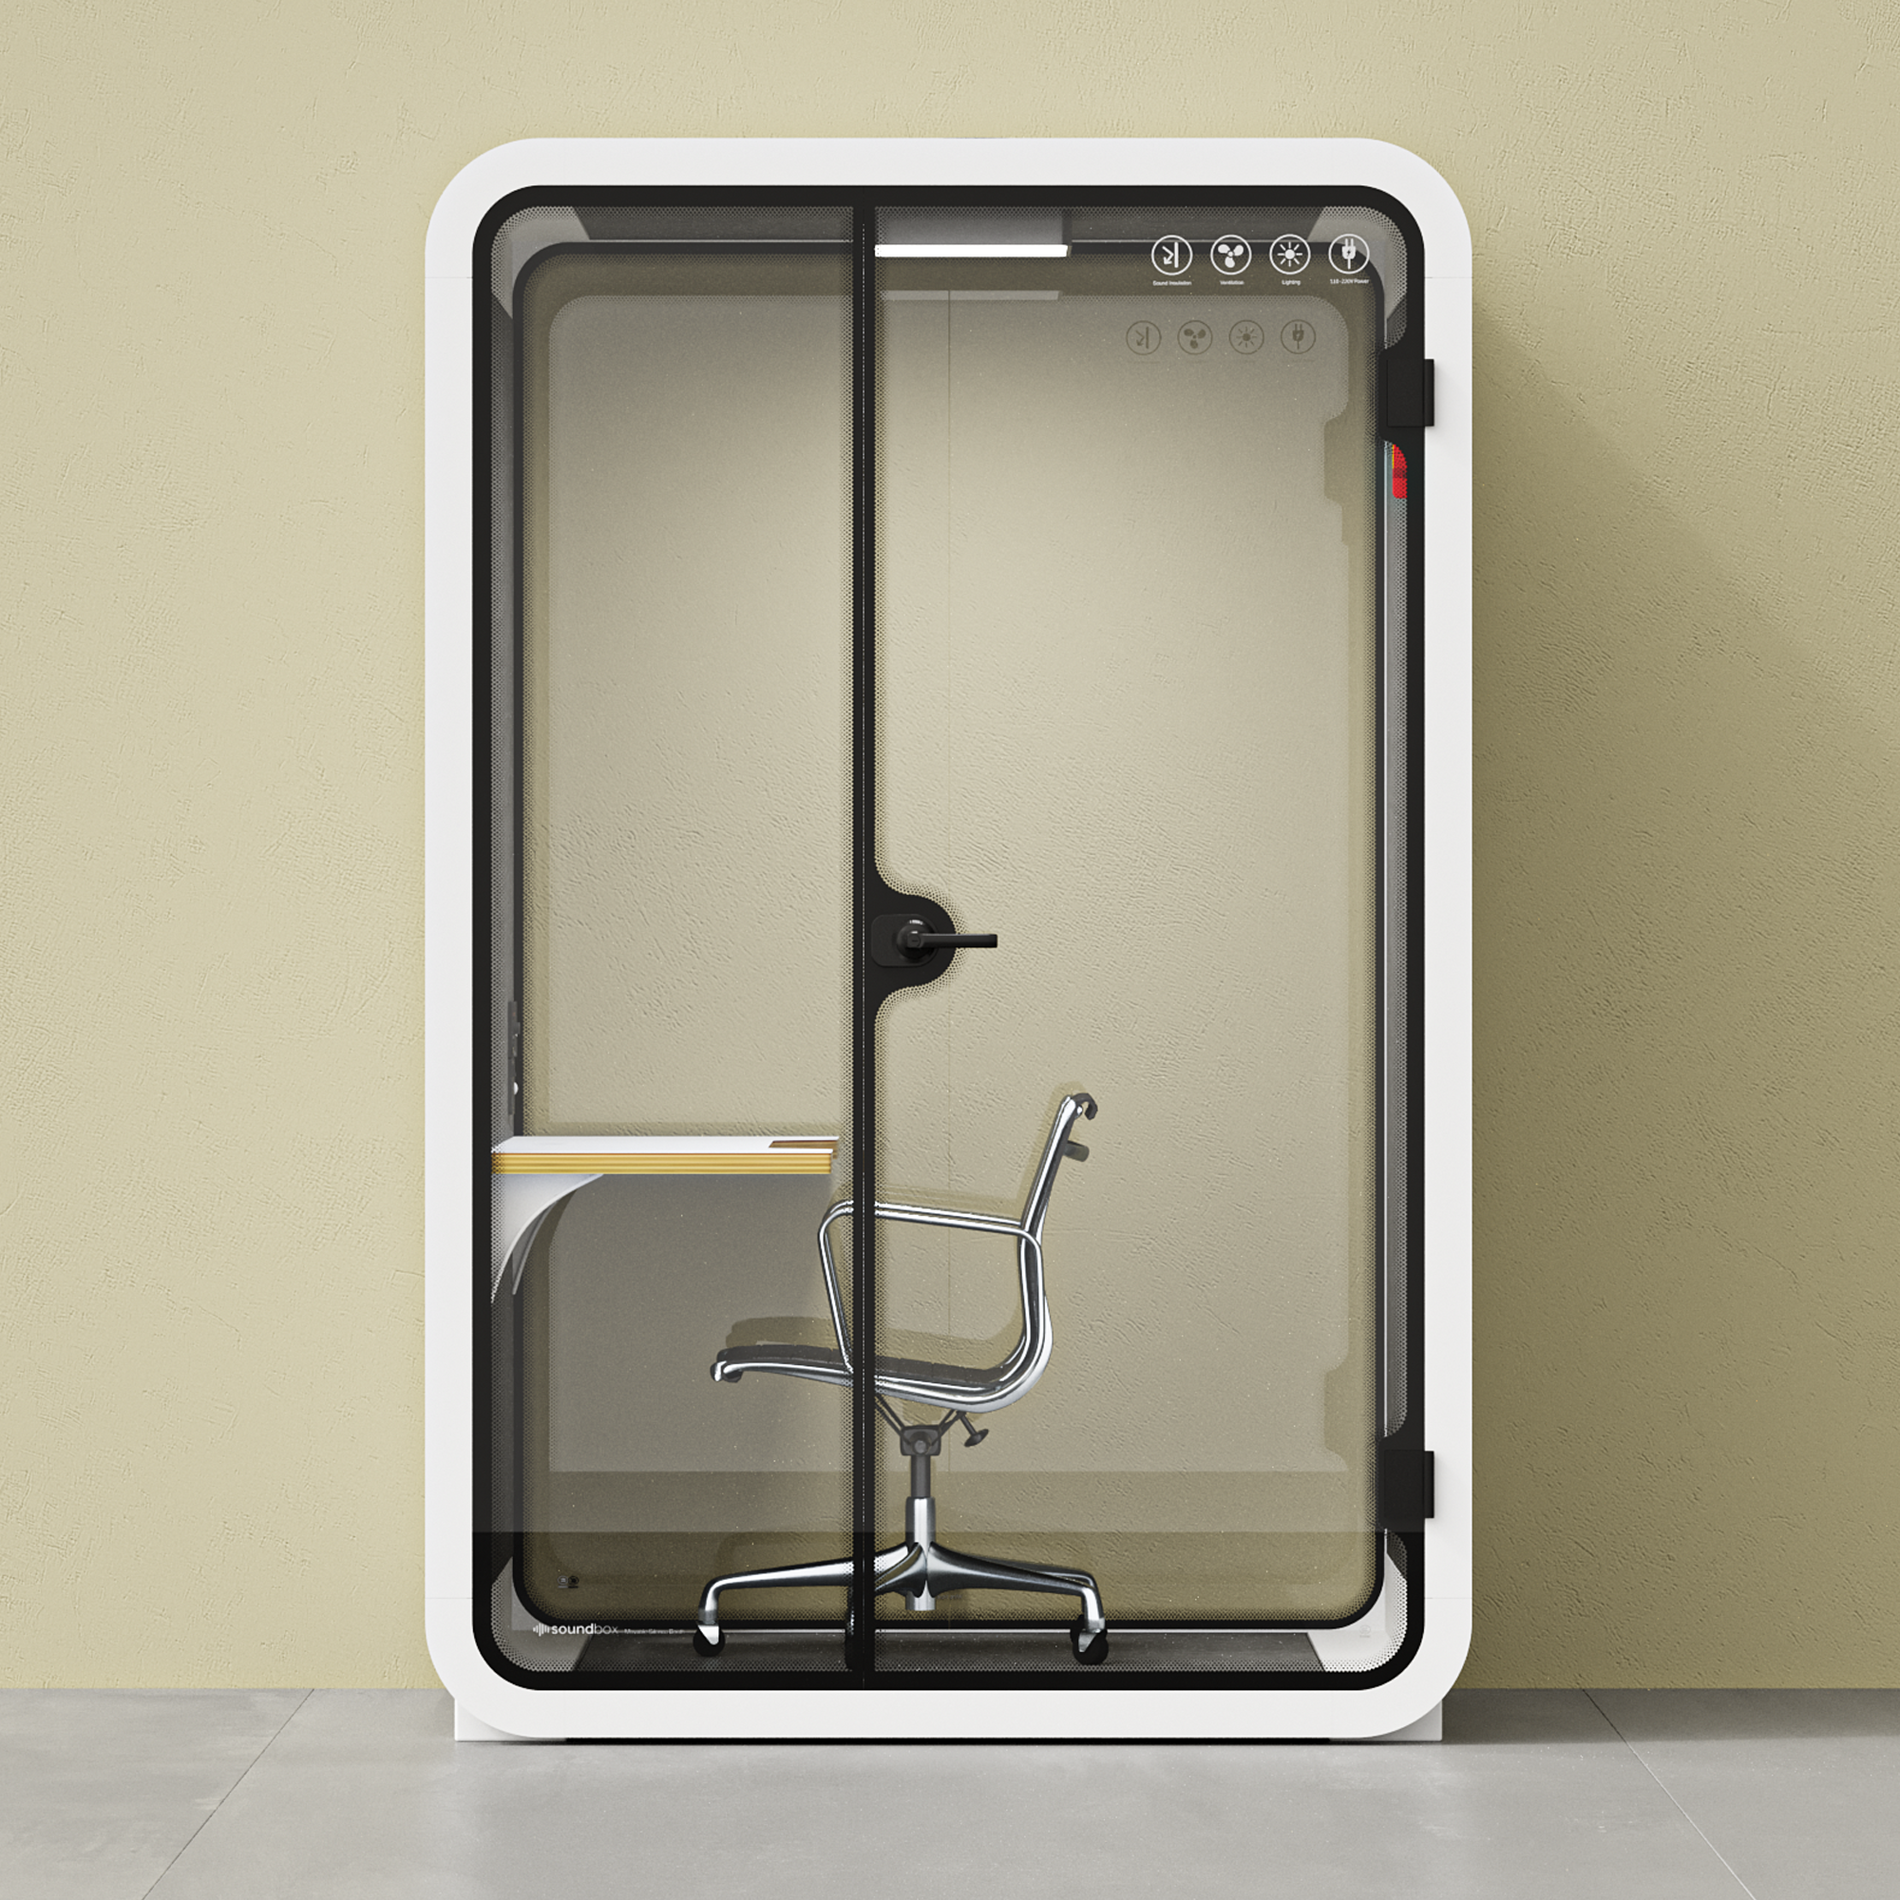 Kantoortelefooncel Quell - 2 persoonsWhite / Dark Gray / Work Station + Designer Office Chair